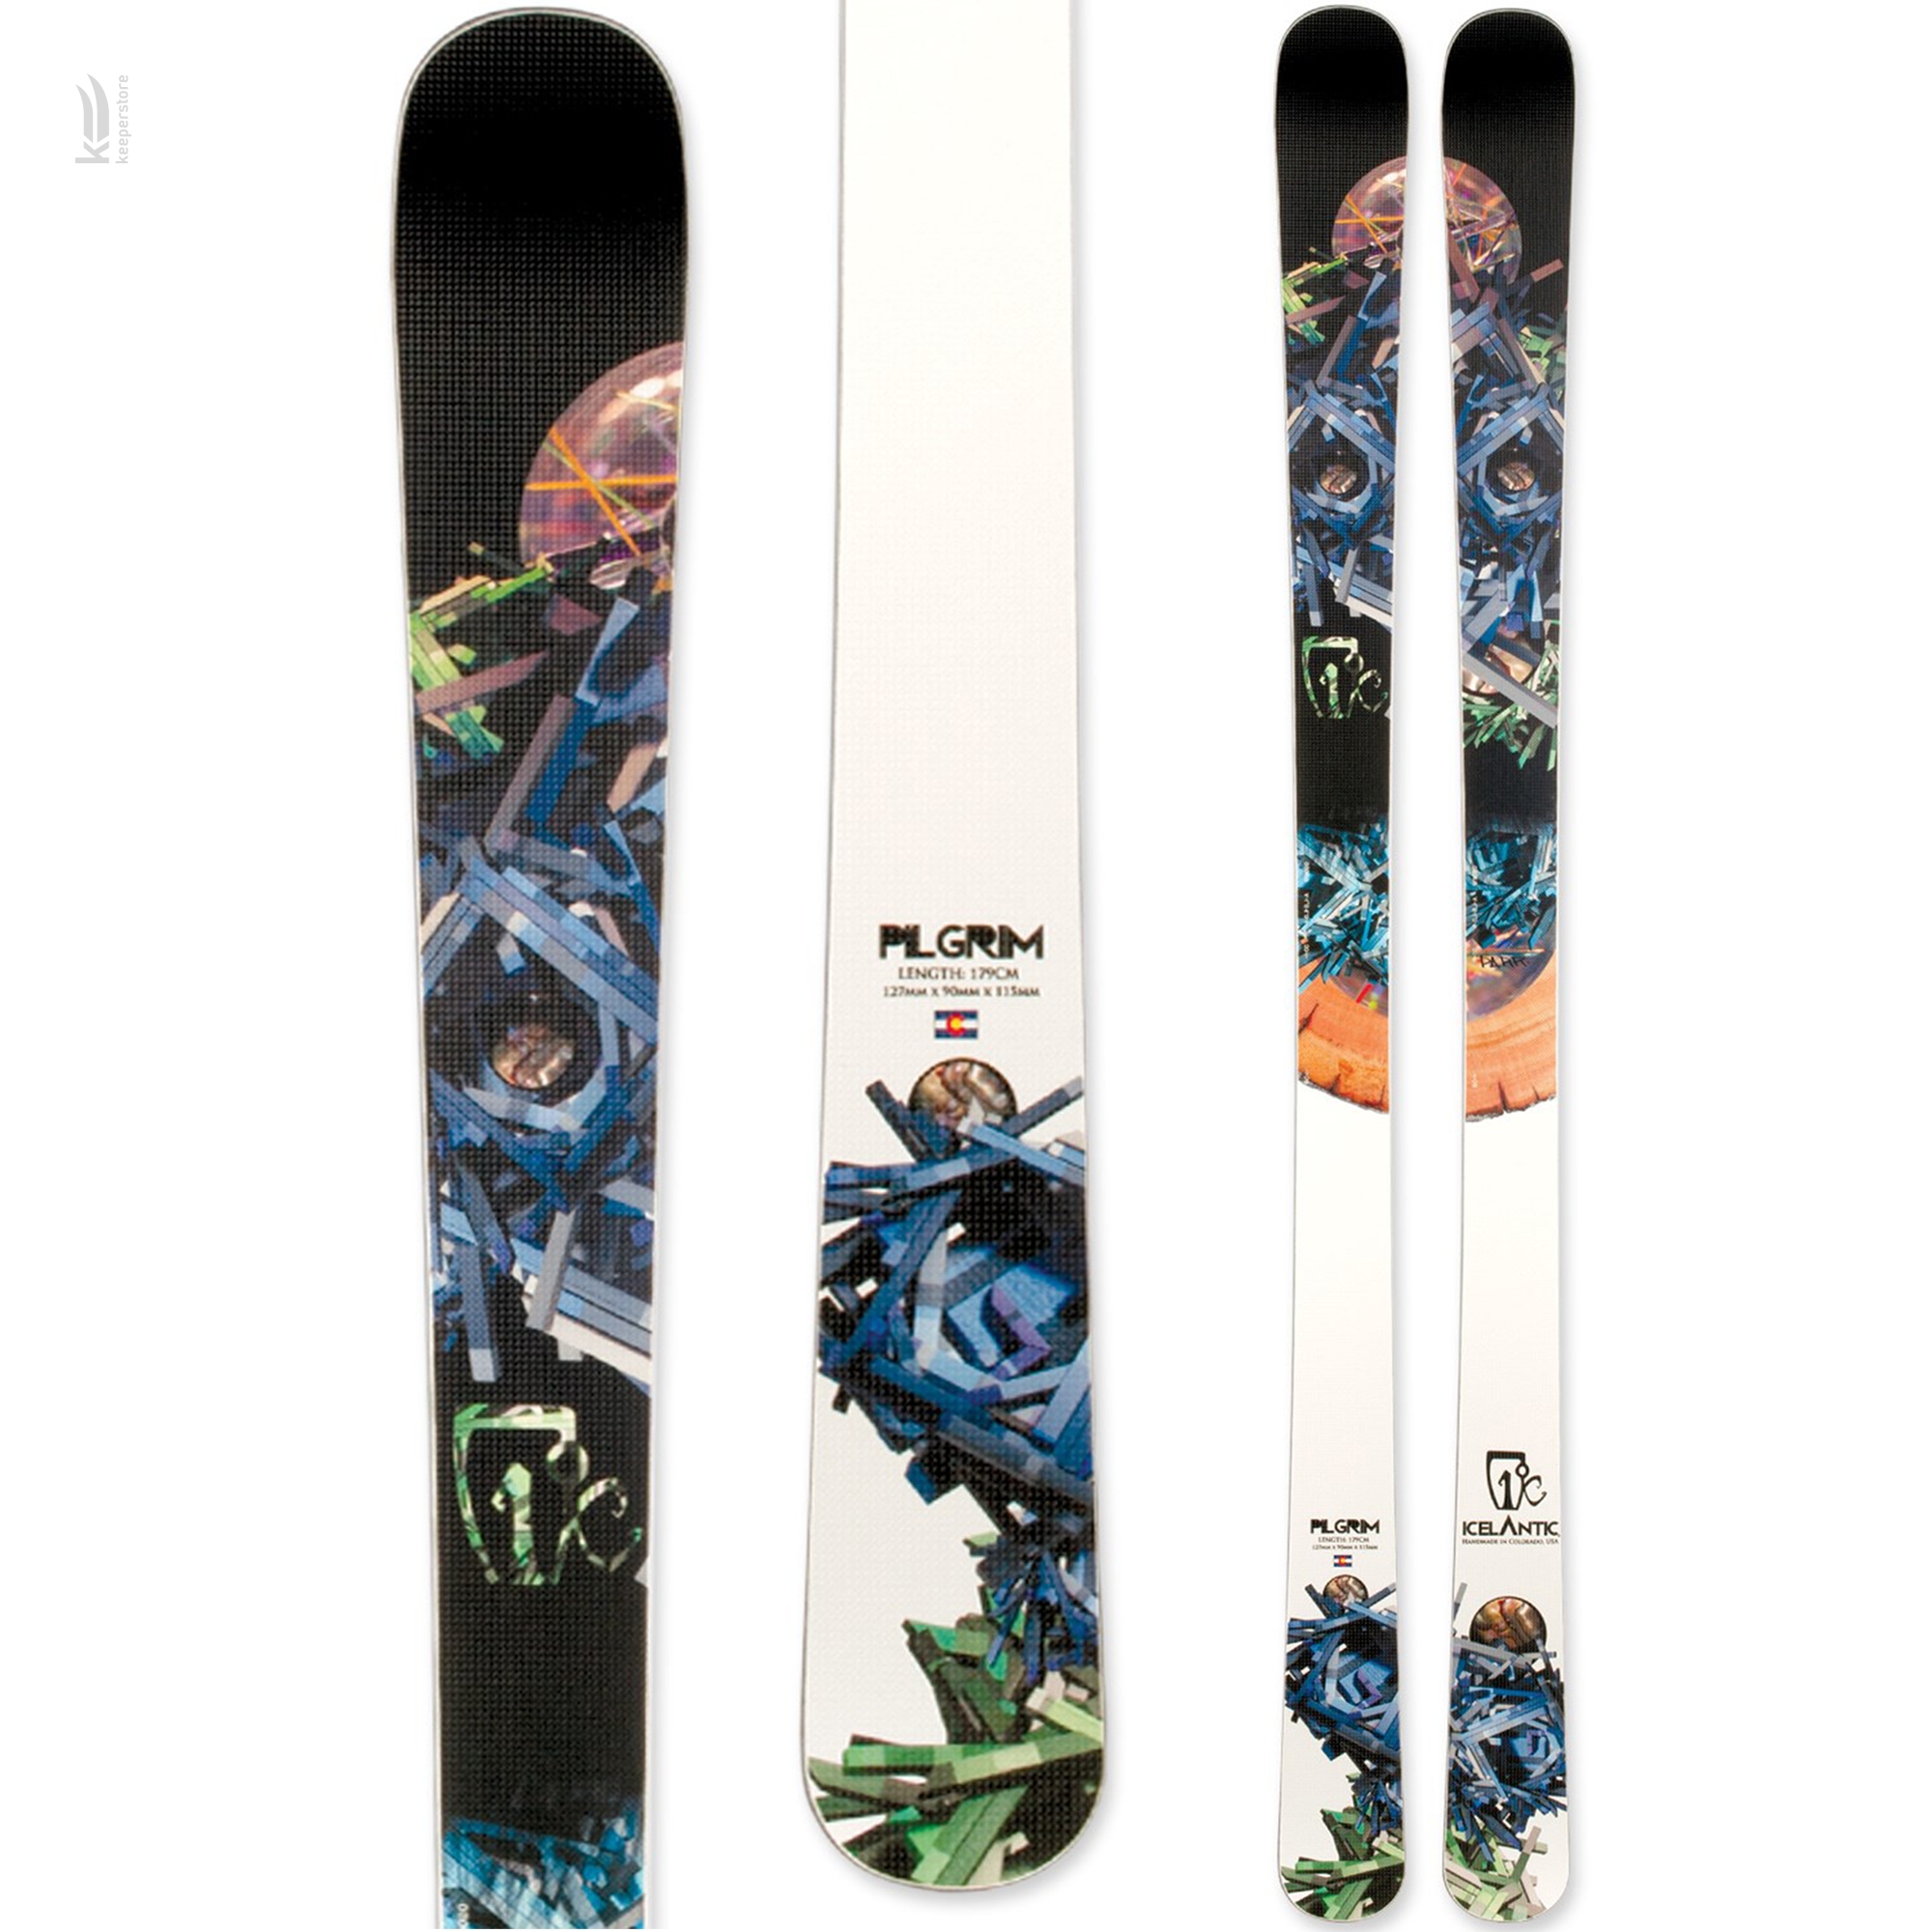 Горные лыжи Icelantic Pilgrim 90 2013/2014 179cm купить в Киеве